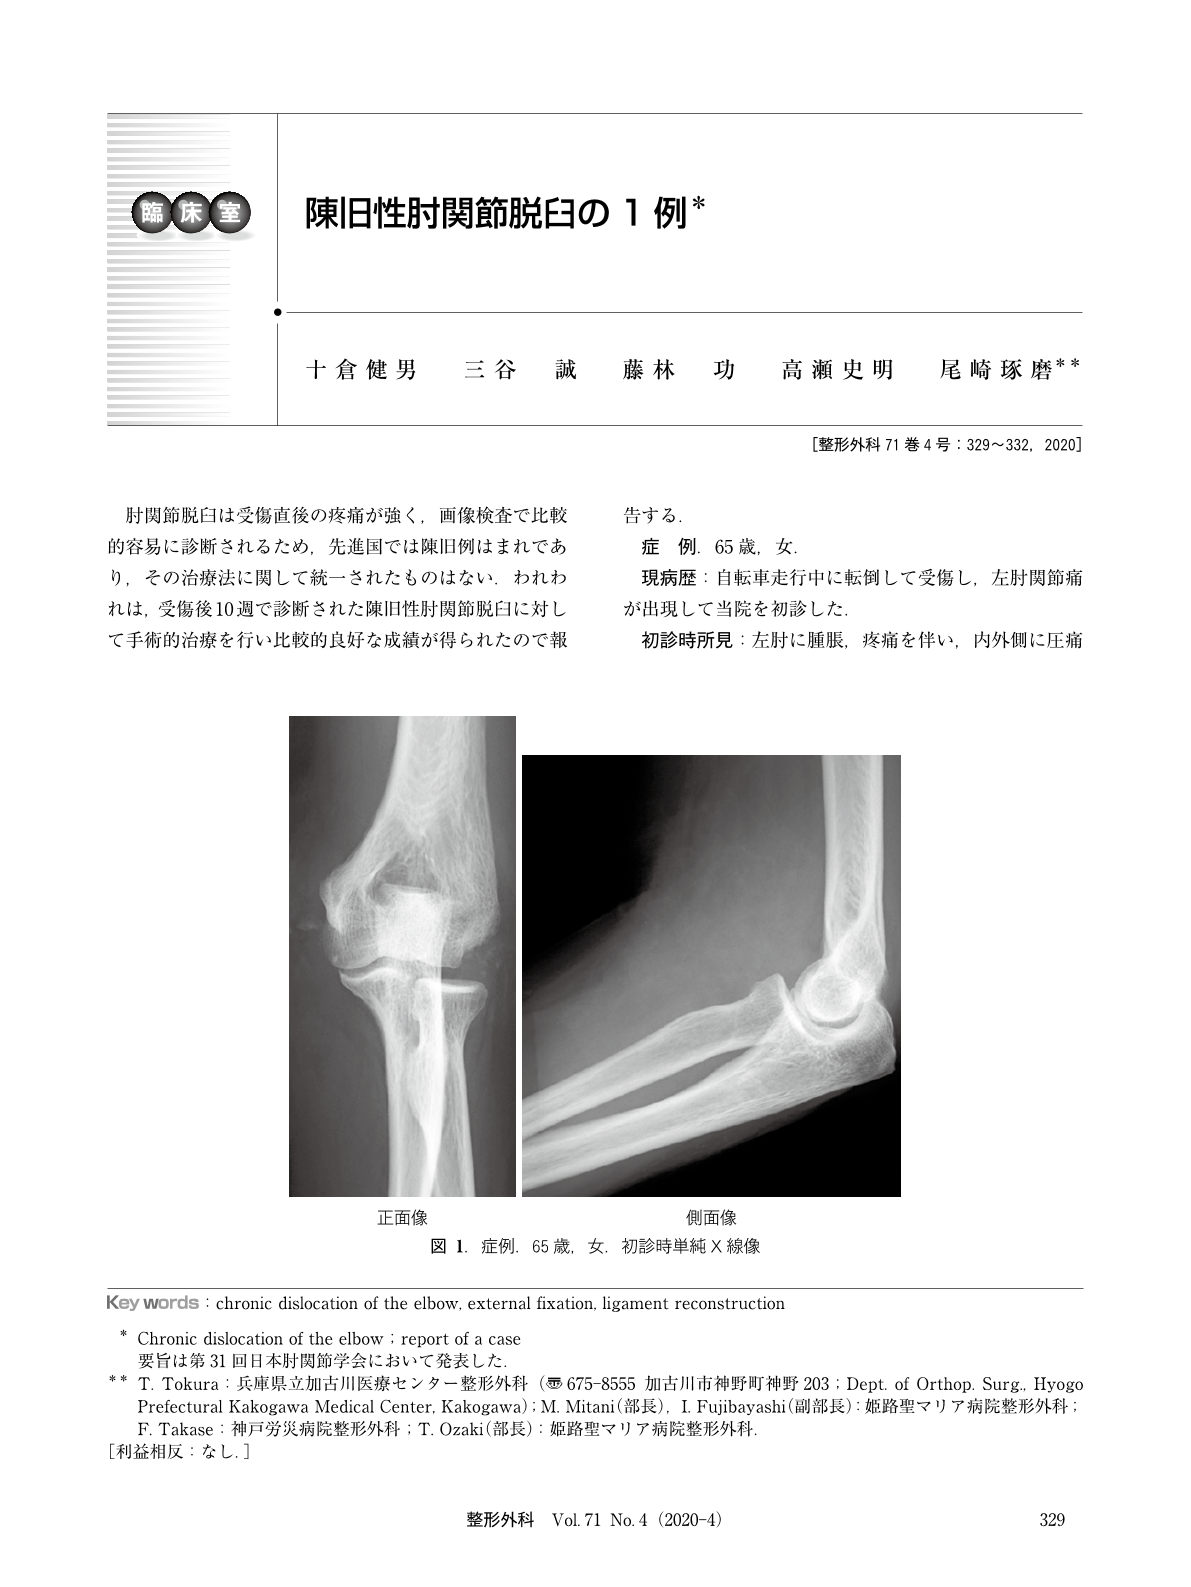 陳旧性肘関節脱臼の1例 臨床雑誌整形外科 71巻4号 医書 Jp